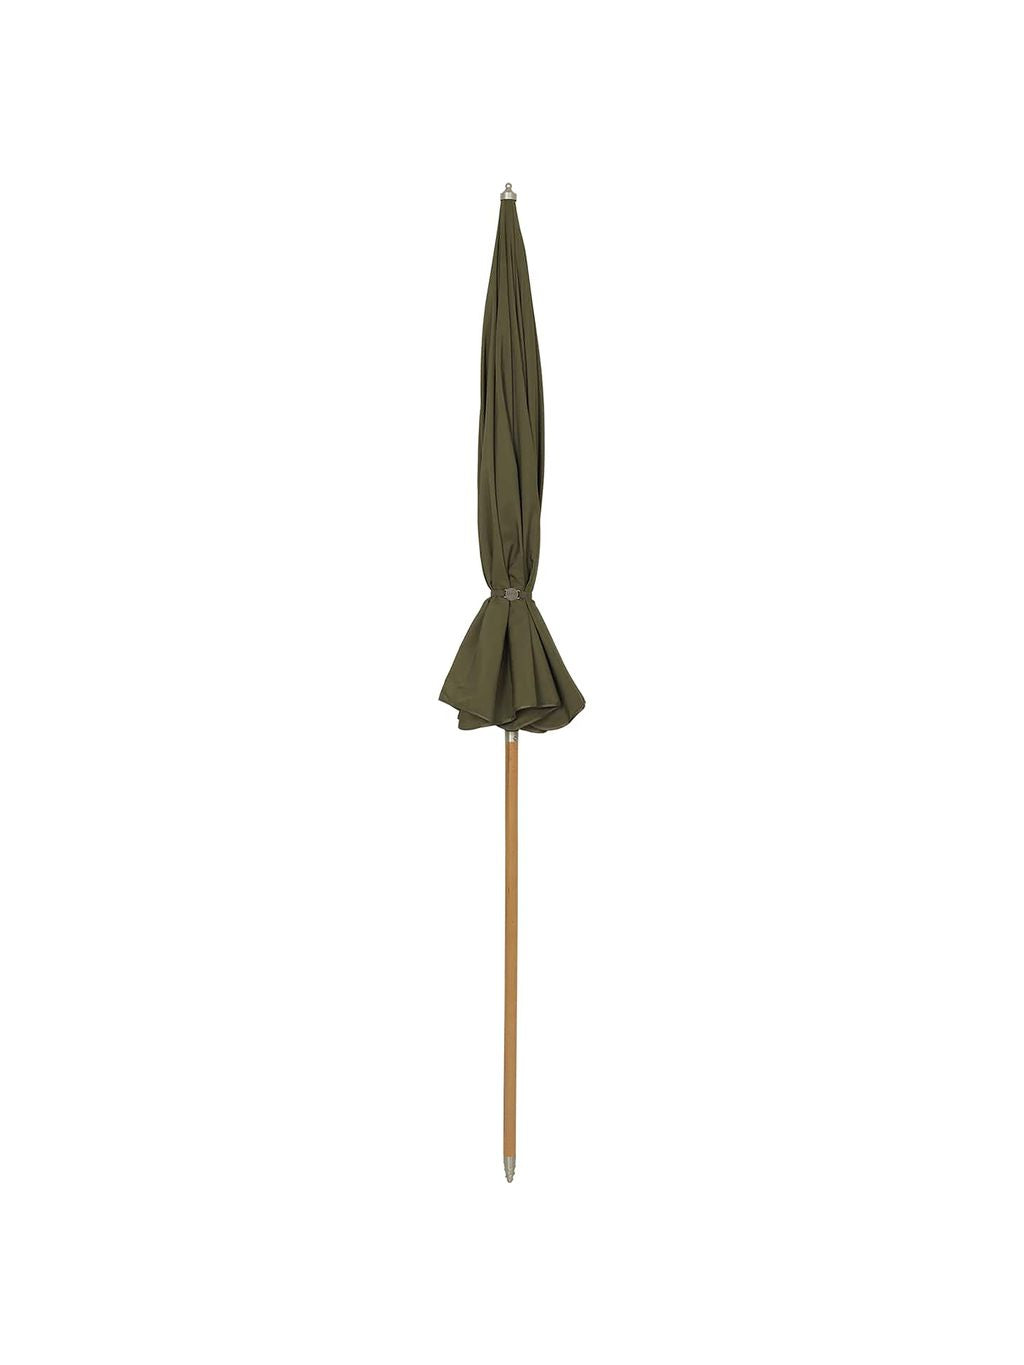 Ferm Living Lull parasol, militær oliven